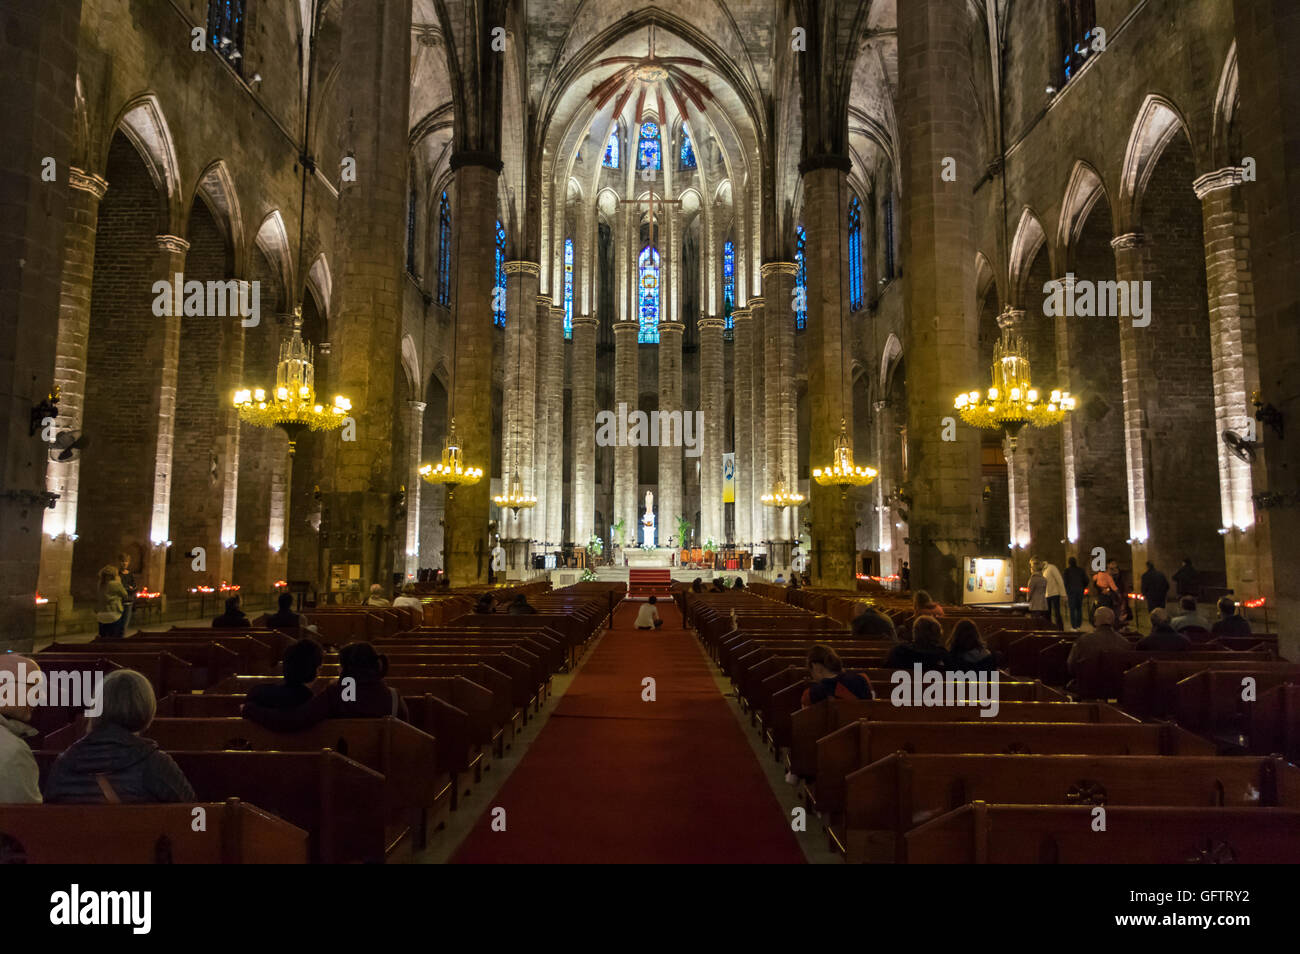 Nave de la Basílica de Santa María del Mar en Barcelona, España, construida en gótico catalán. Foto de stock